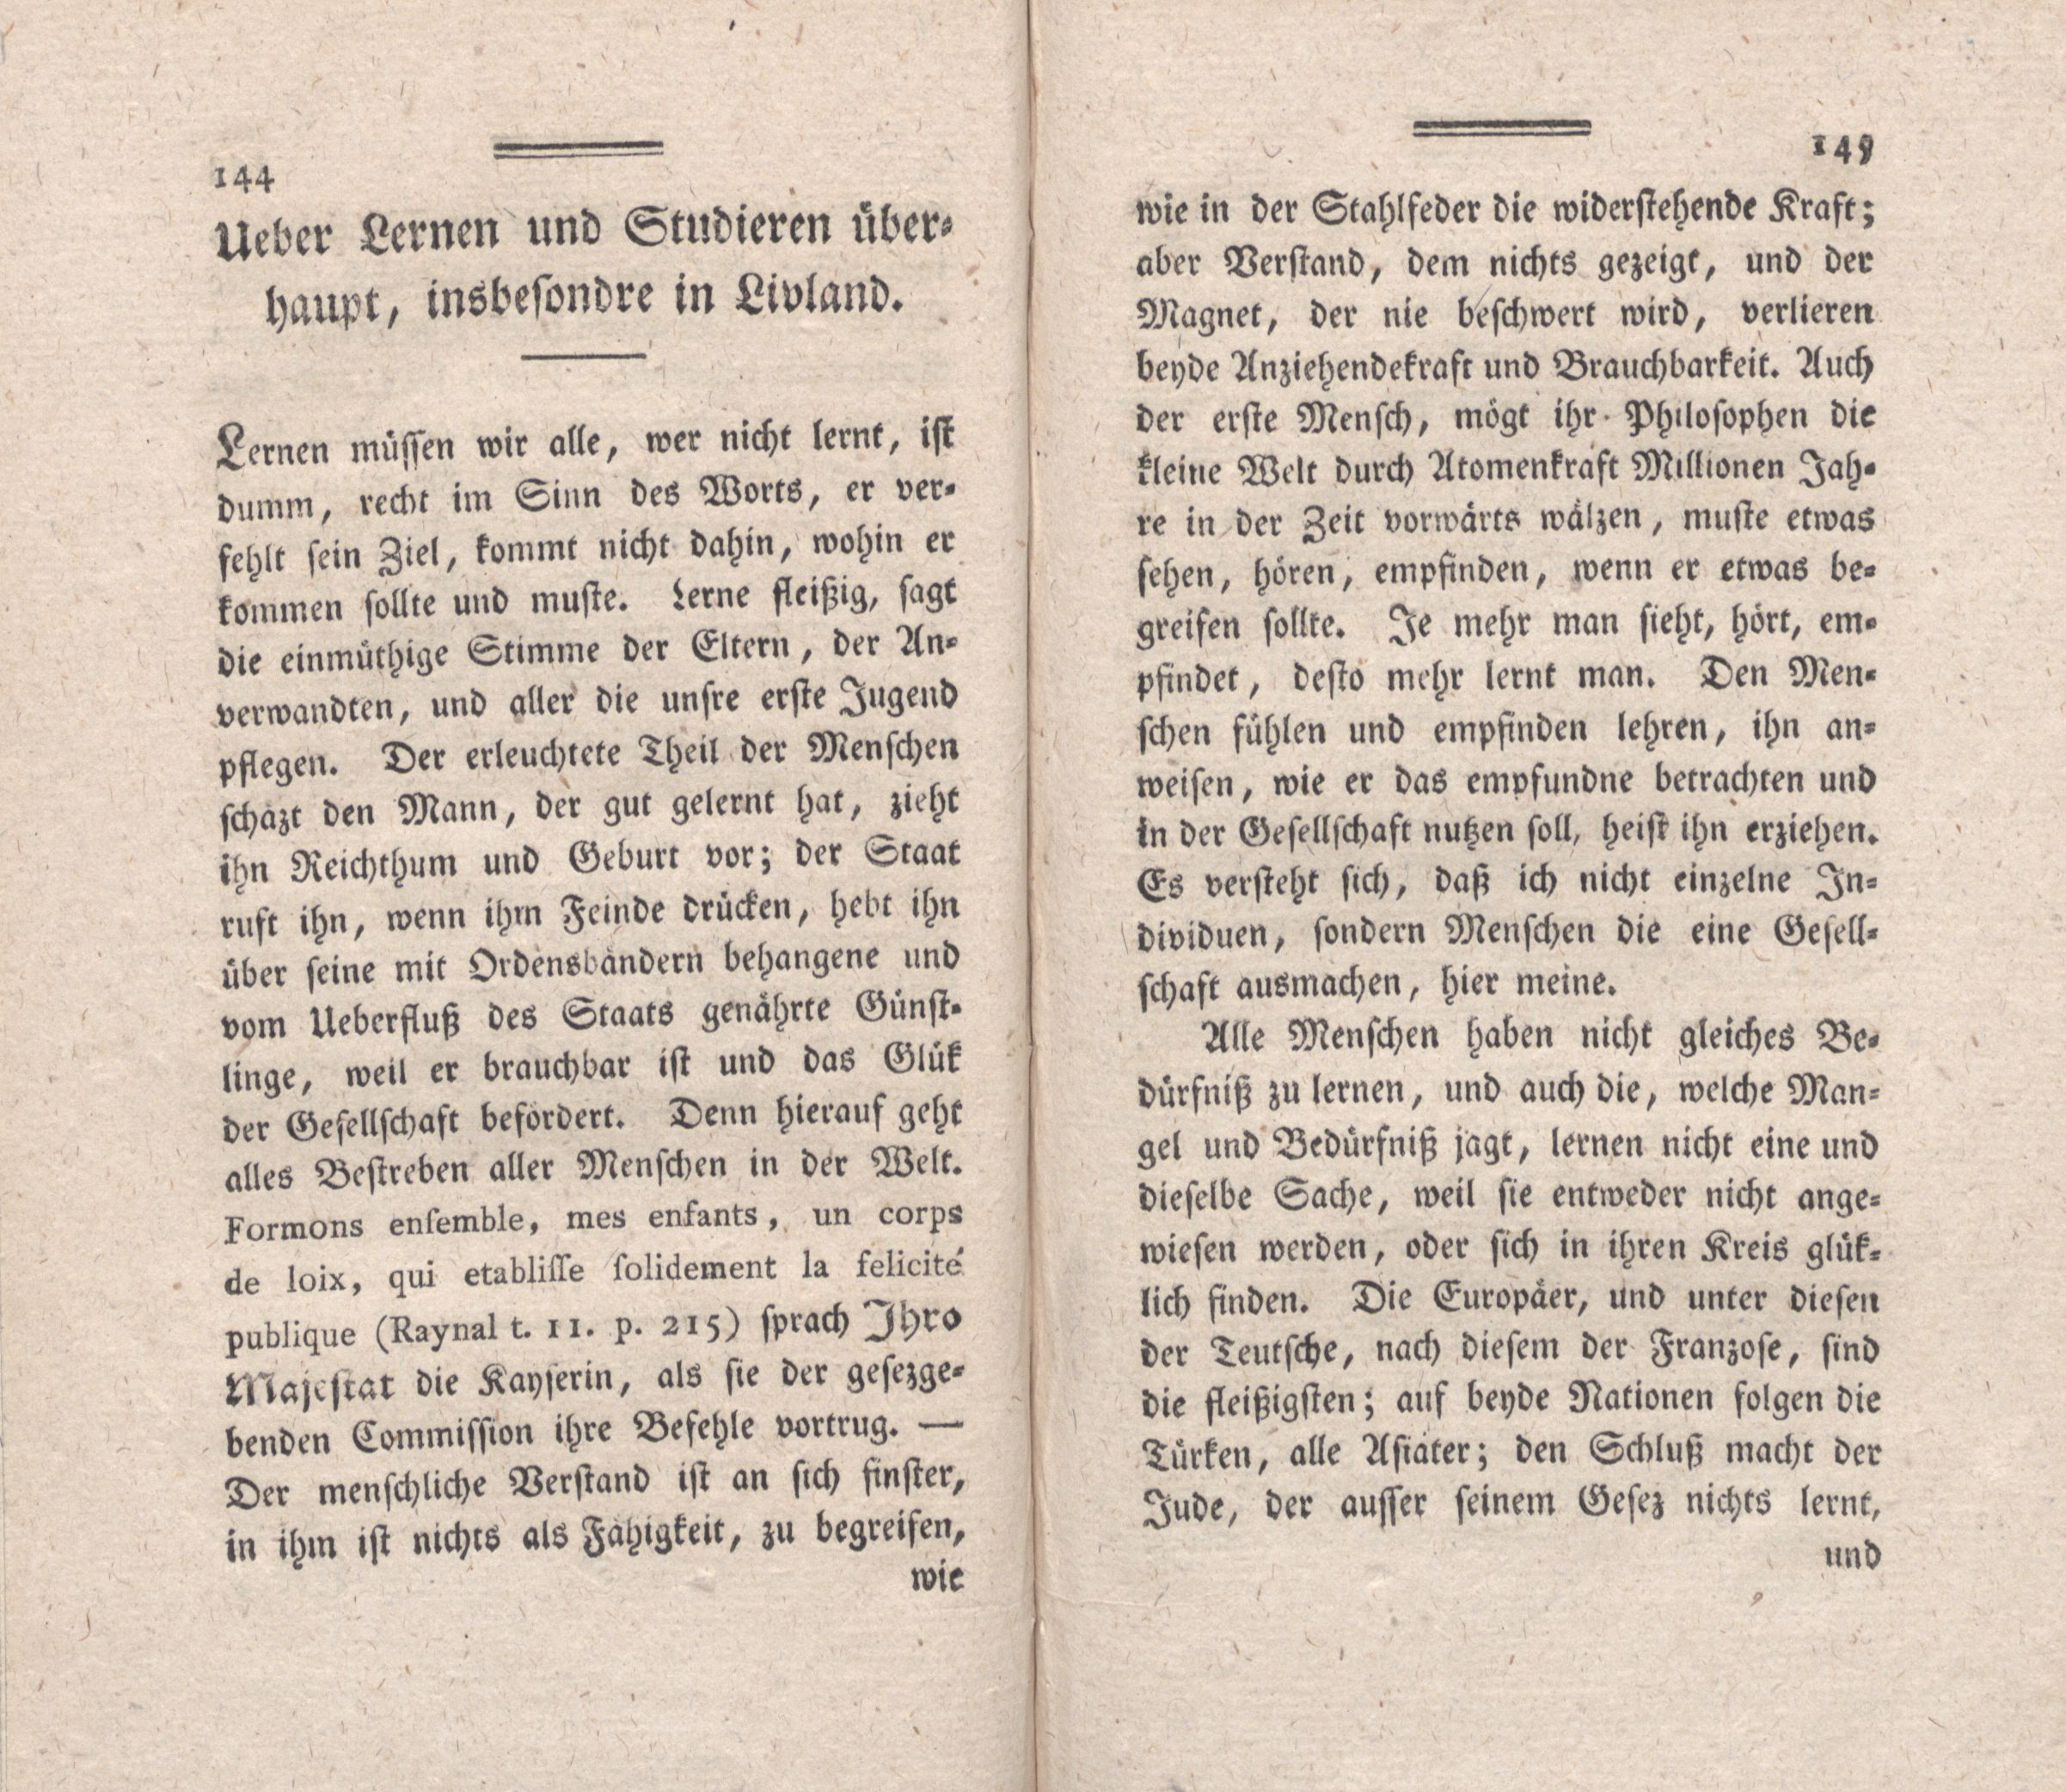 Ueber Lernen und Studieren überhaupt, insbesondere in Livland (1787) | 1. (144-145) Haupttext